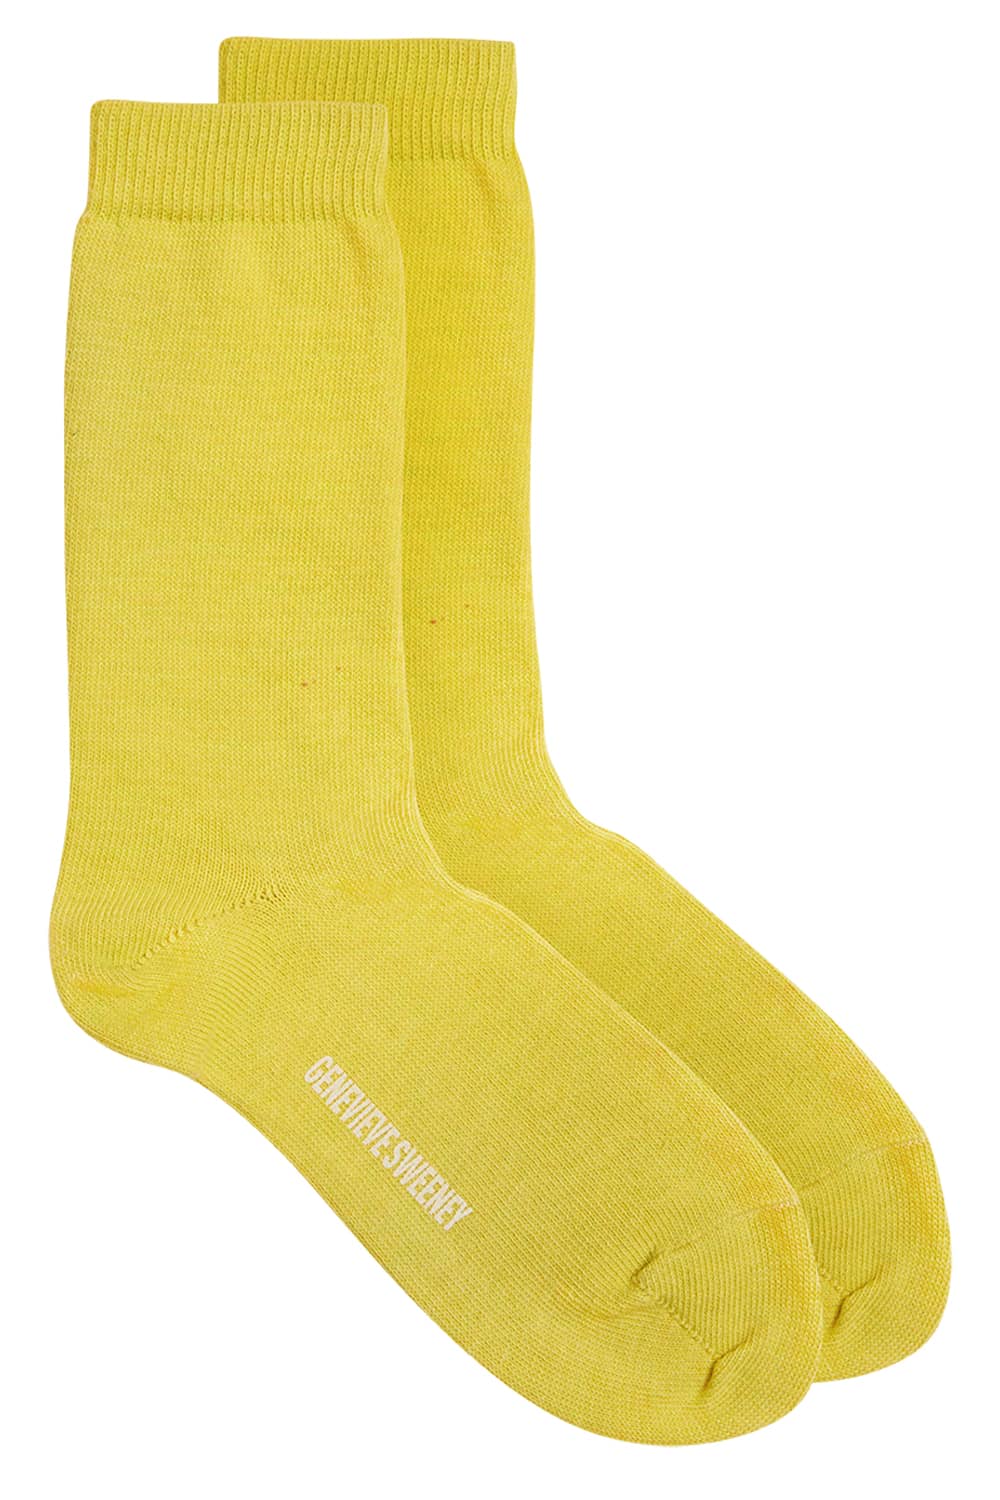 Luxury Organic Cotton Socks | Yellow | Unisex | British Made